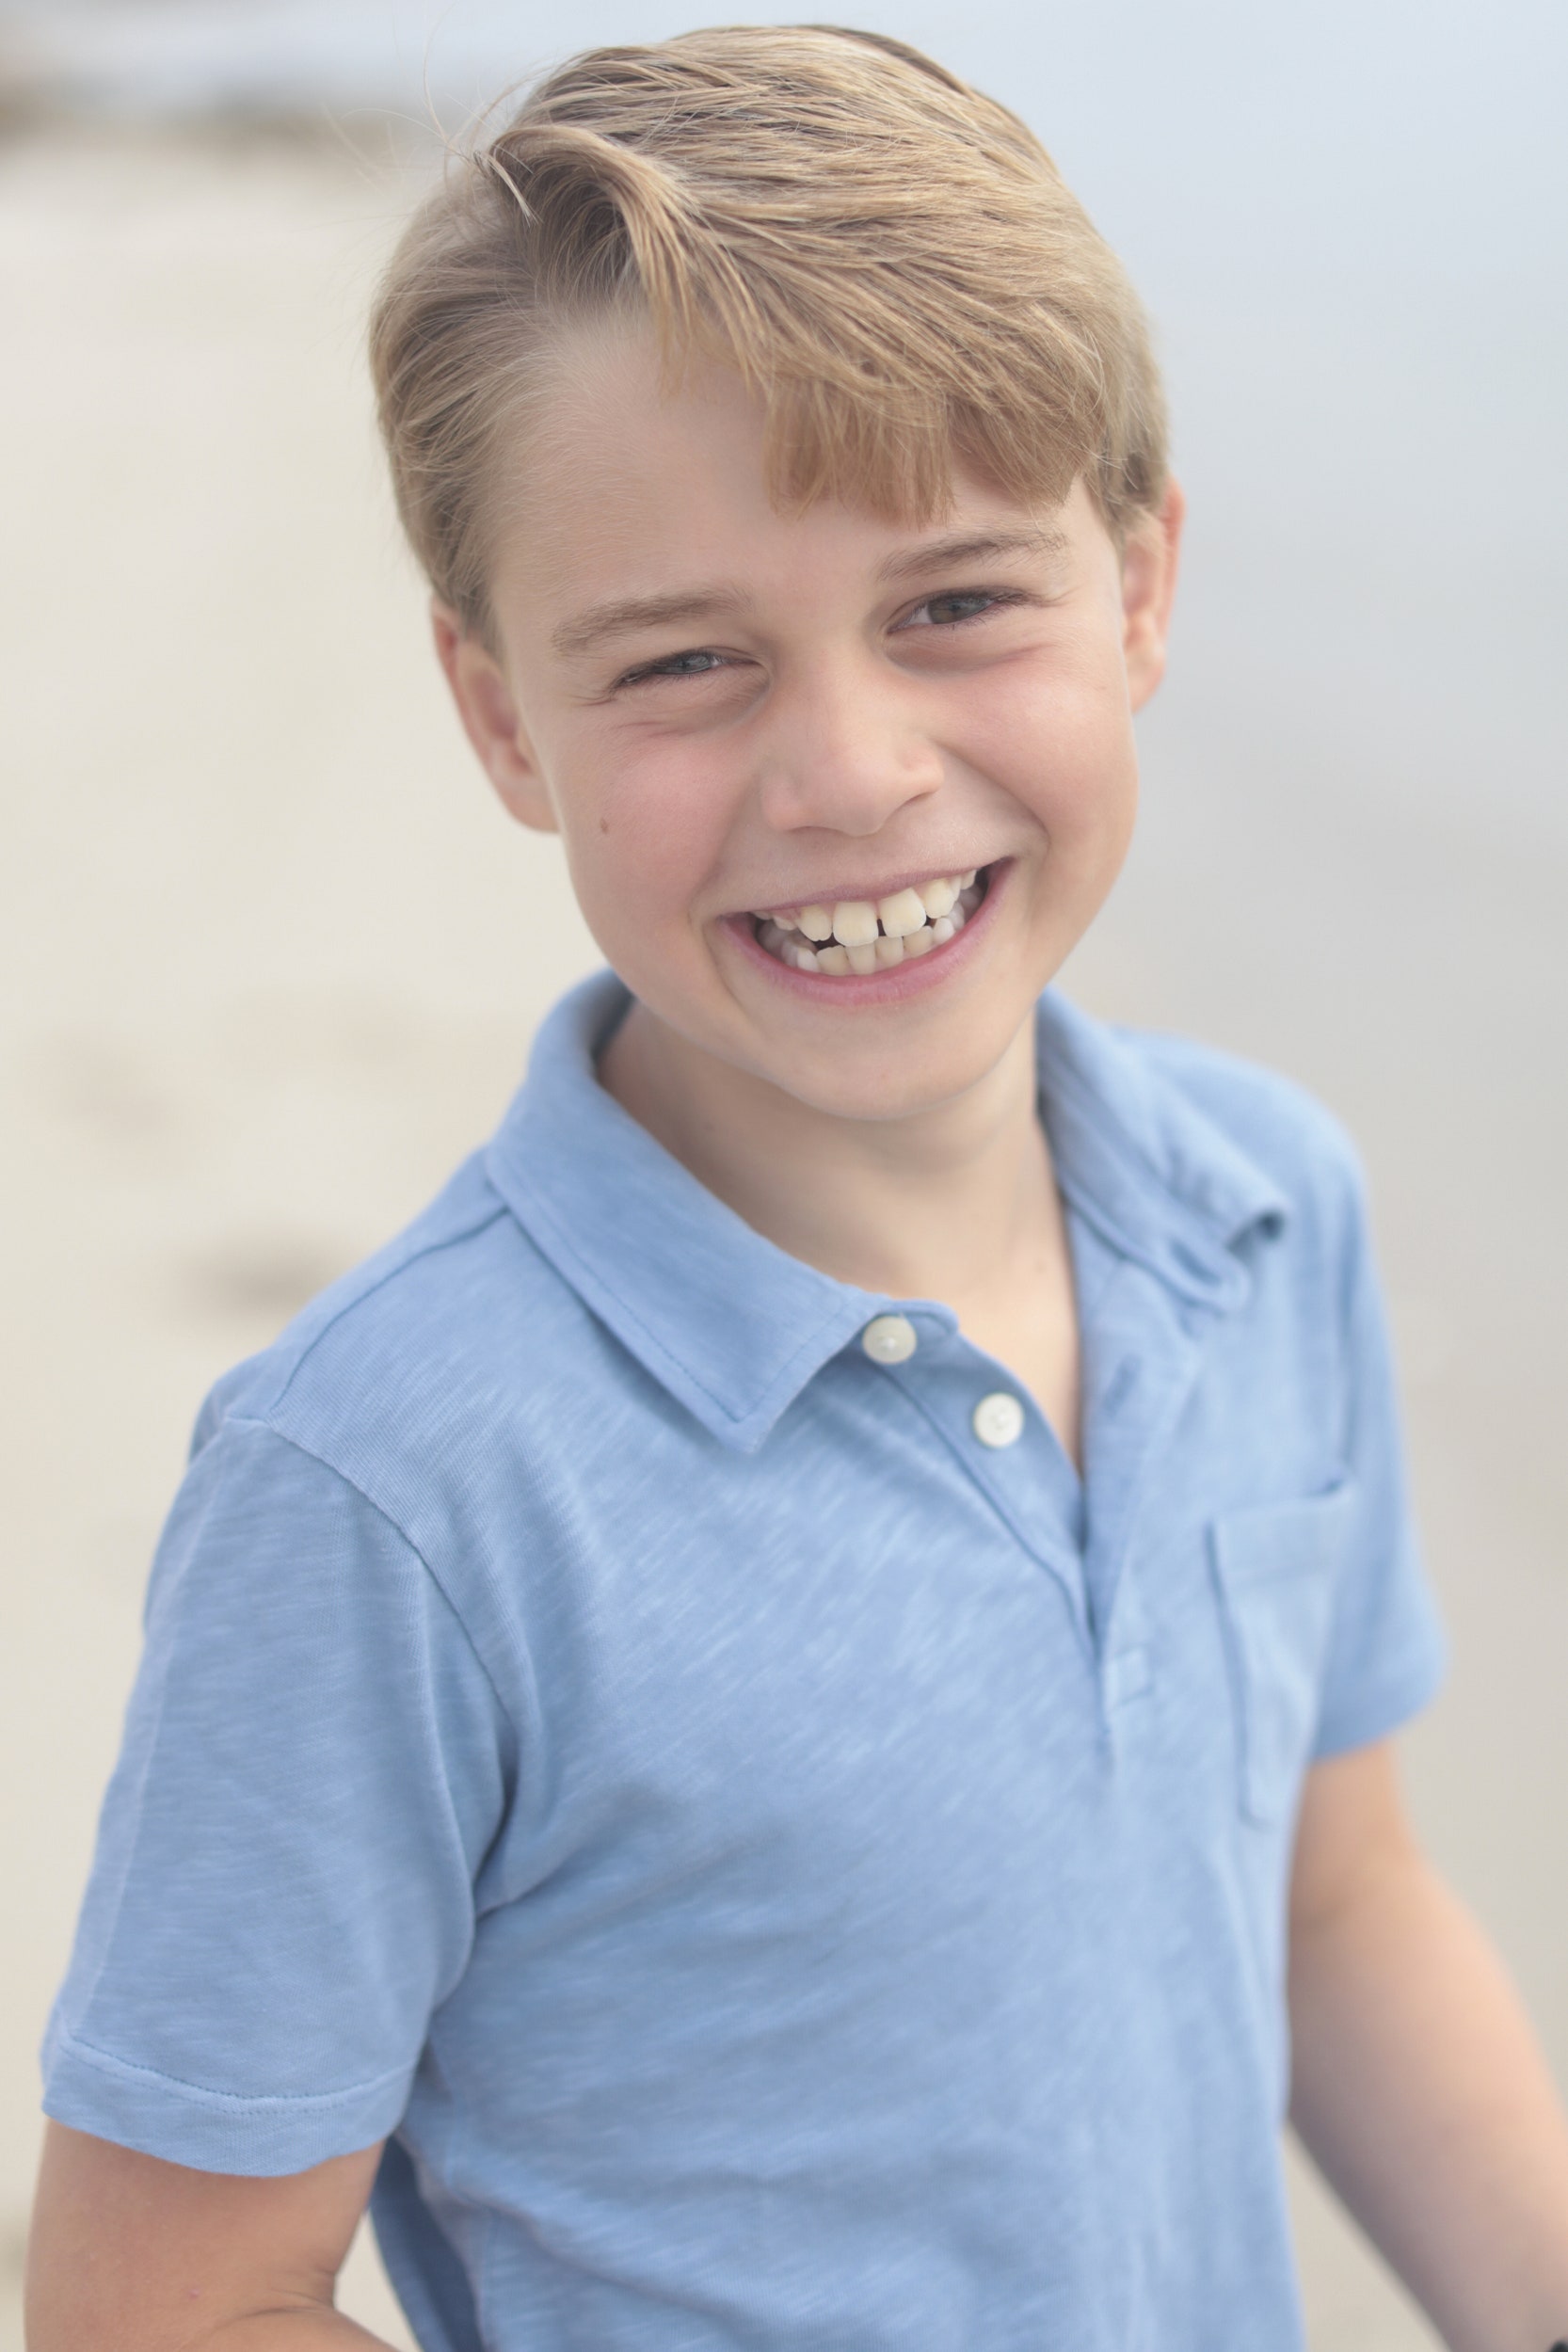 Принц Уильям и Кейт Миддлтон опубликовали новый снимок принца Джорджа в честь его 9-летия